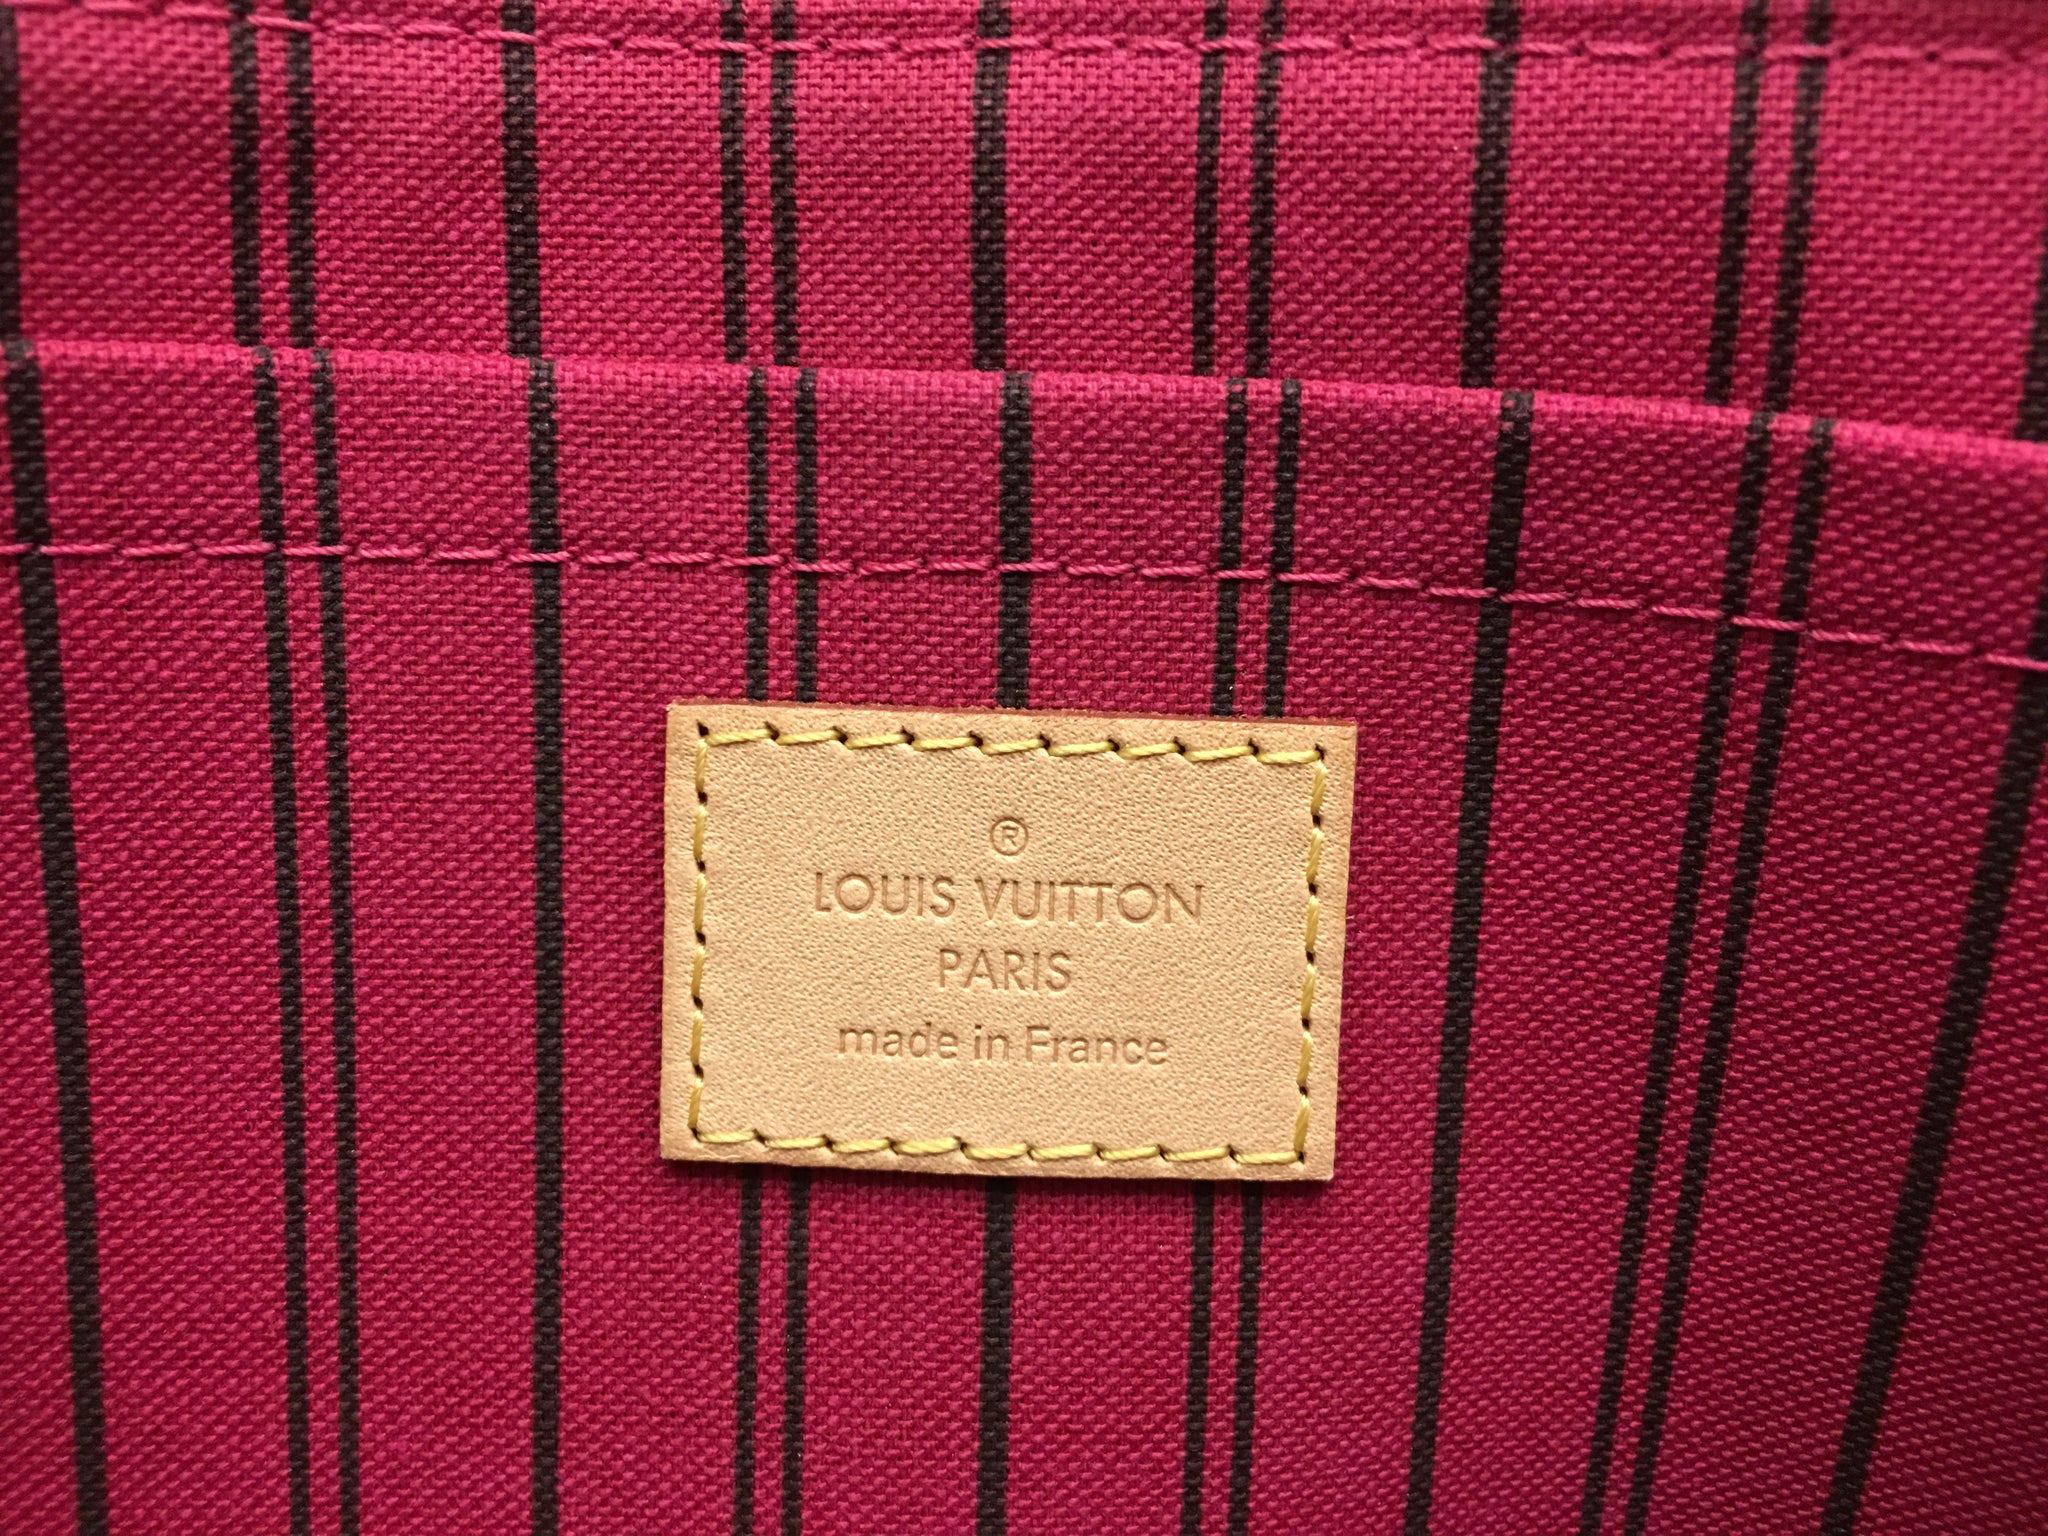 ♥︎ barbieville™ ♥︎ #lv #classic #handbags Yes please  Pink louis vuitton  bag, Louis vuitton pink, Louis vuitton handbags neverfull